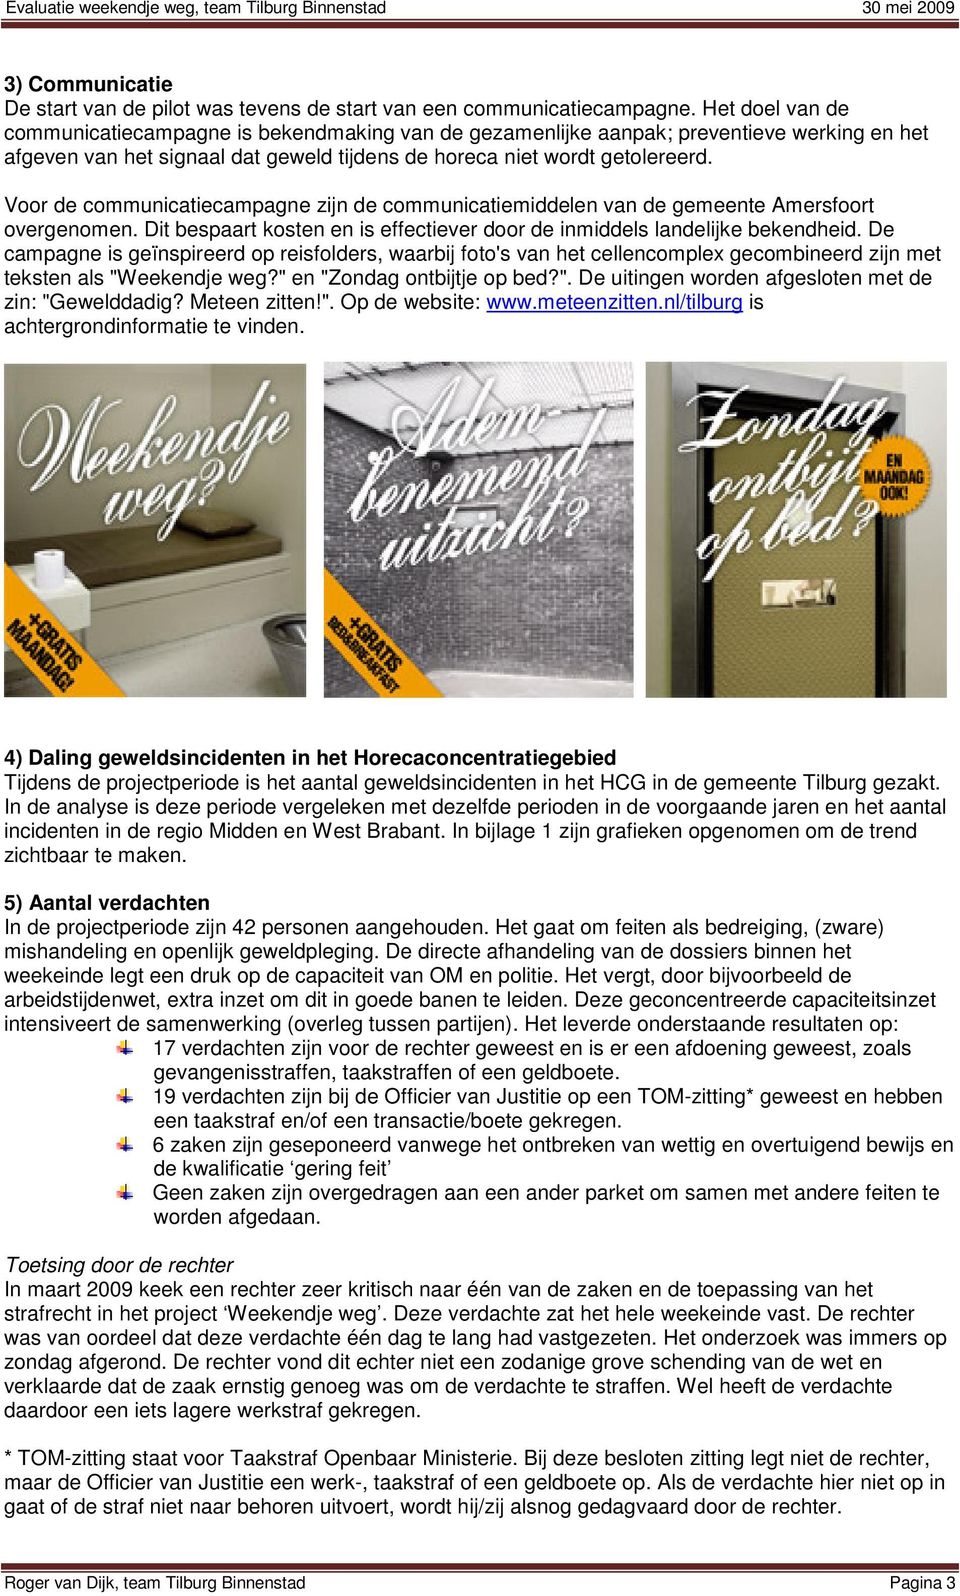 Voor de communicatiecampagne zijn de communicatiemiddelen van de gemeente Amersfoort overgenomen. Dit bespaart kosten en is effectiever door de inmiddels landelijke bekendheid.